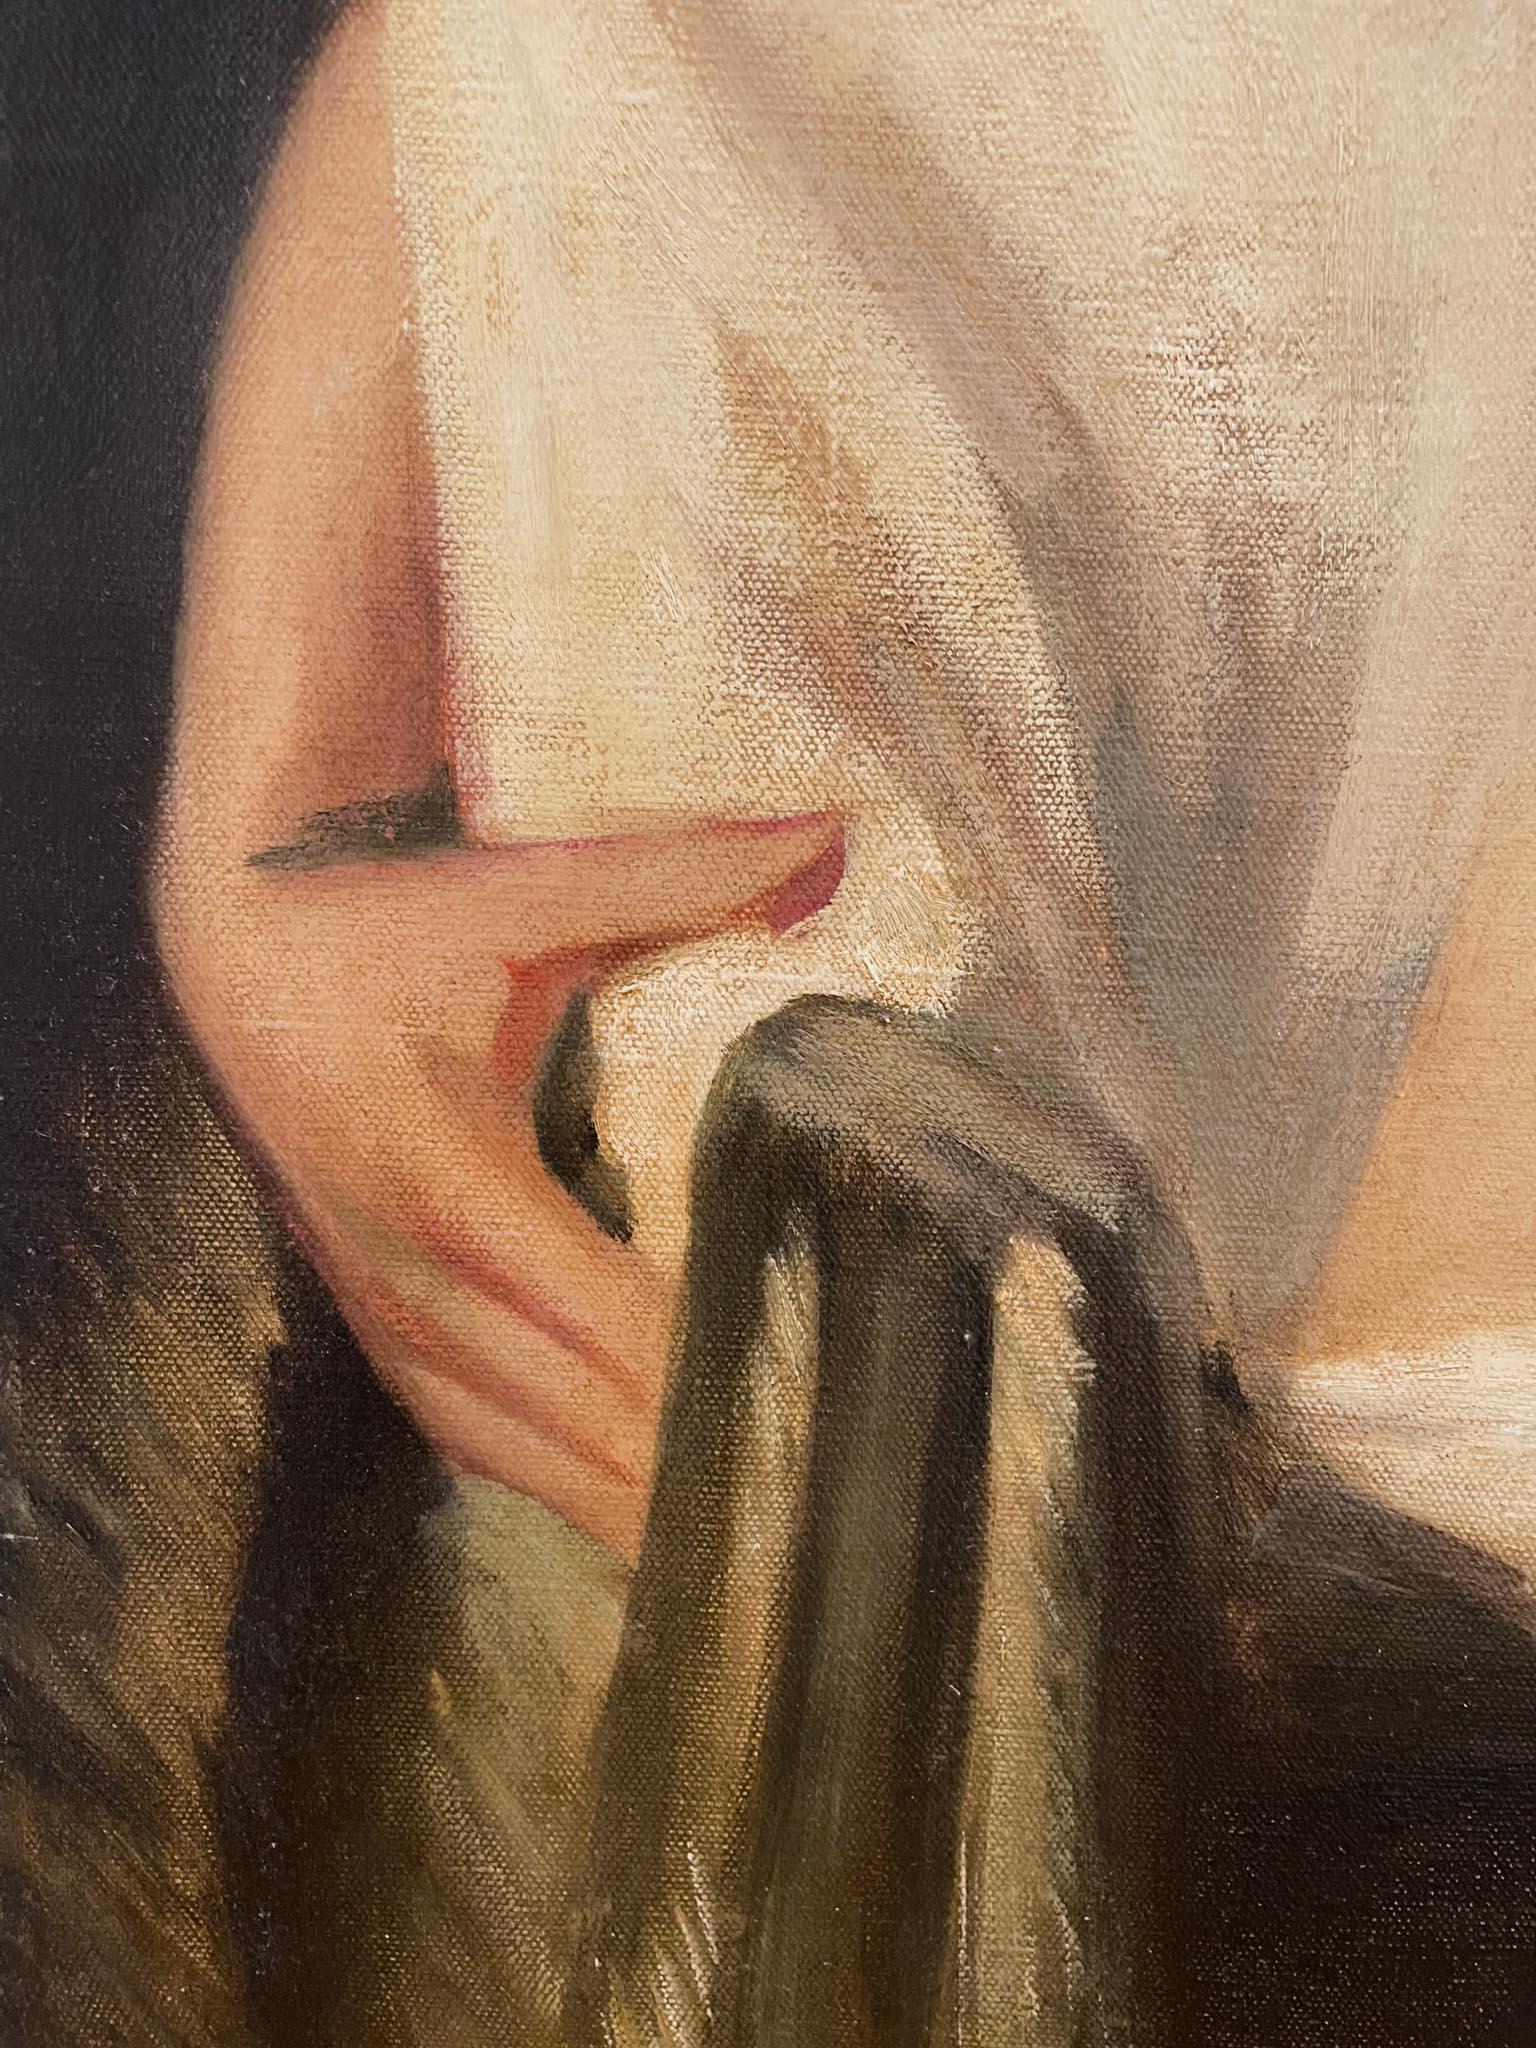 Femme nue contemplative de Julius Fehling (1869-1946)
Huile sur toile
39 ½ x 31 ½ pouces non encadré (100.33 x 80.01 cm)
Signé en bas à droite

Description :
Cette peinture à l'huile de Julius Fehling est une réalisation étonnante de l'anatomie et